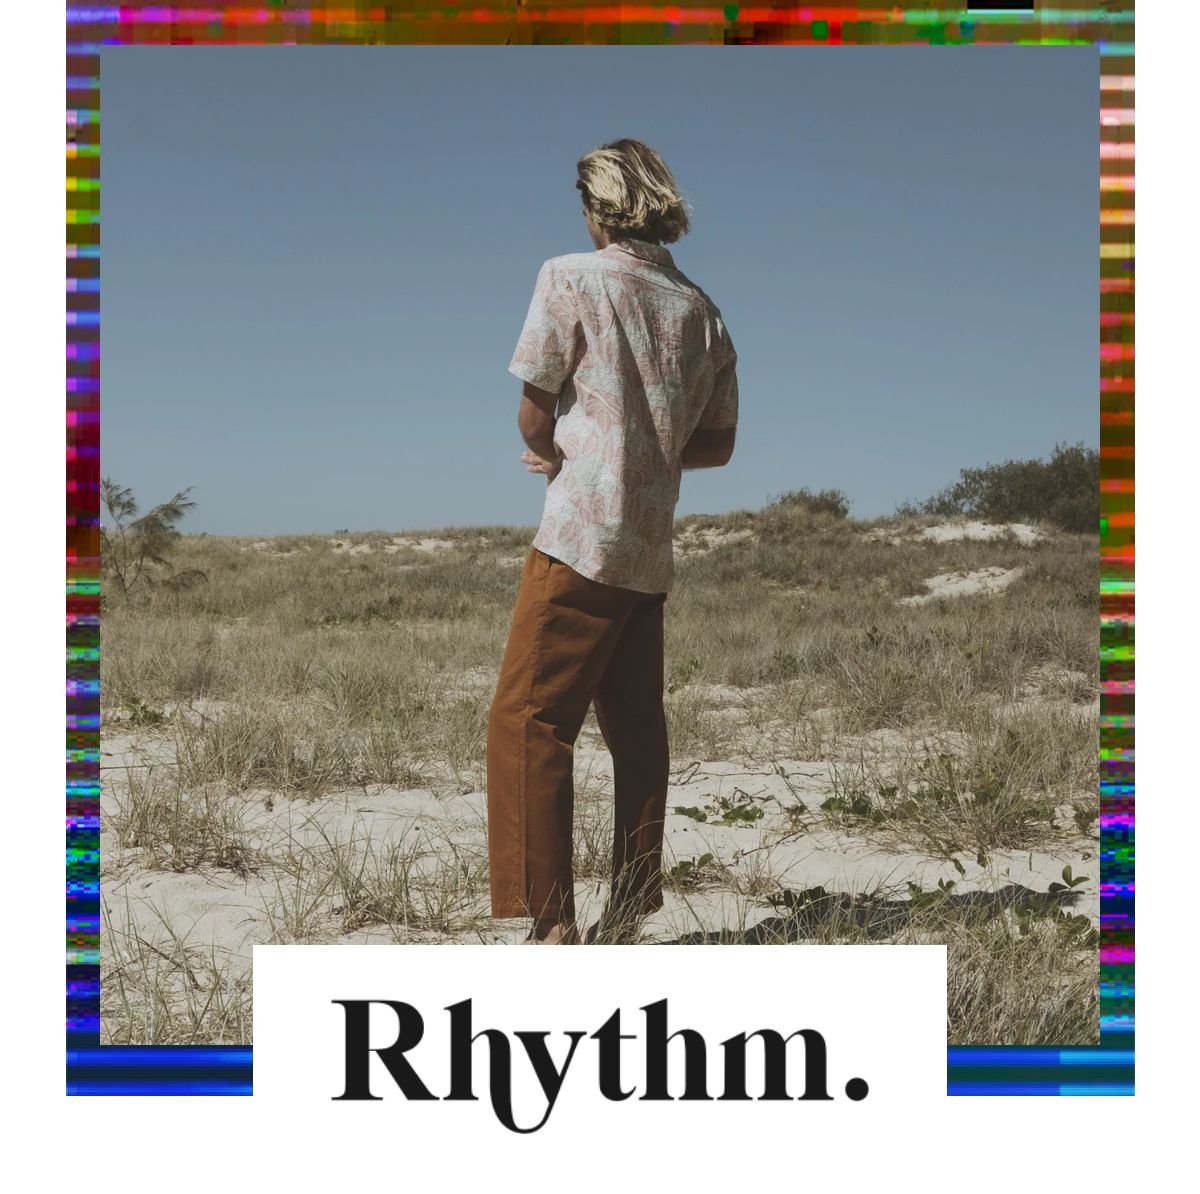 Rhythm imagery